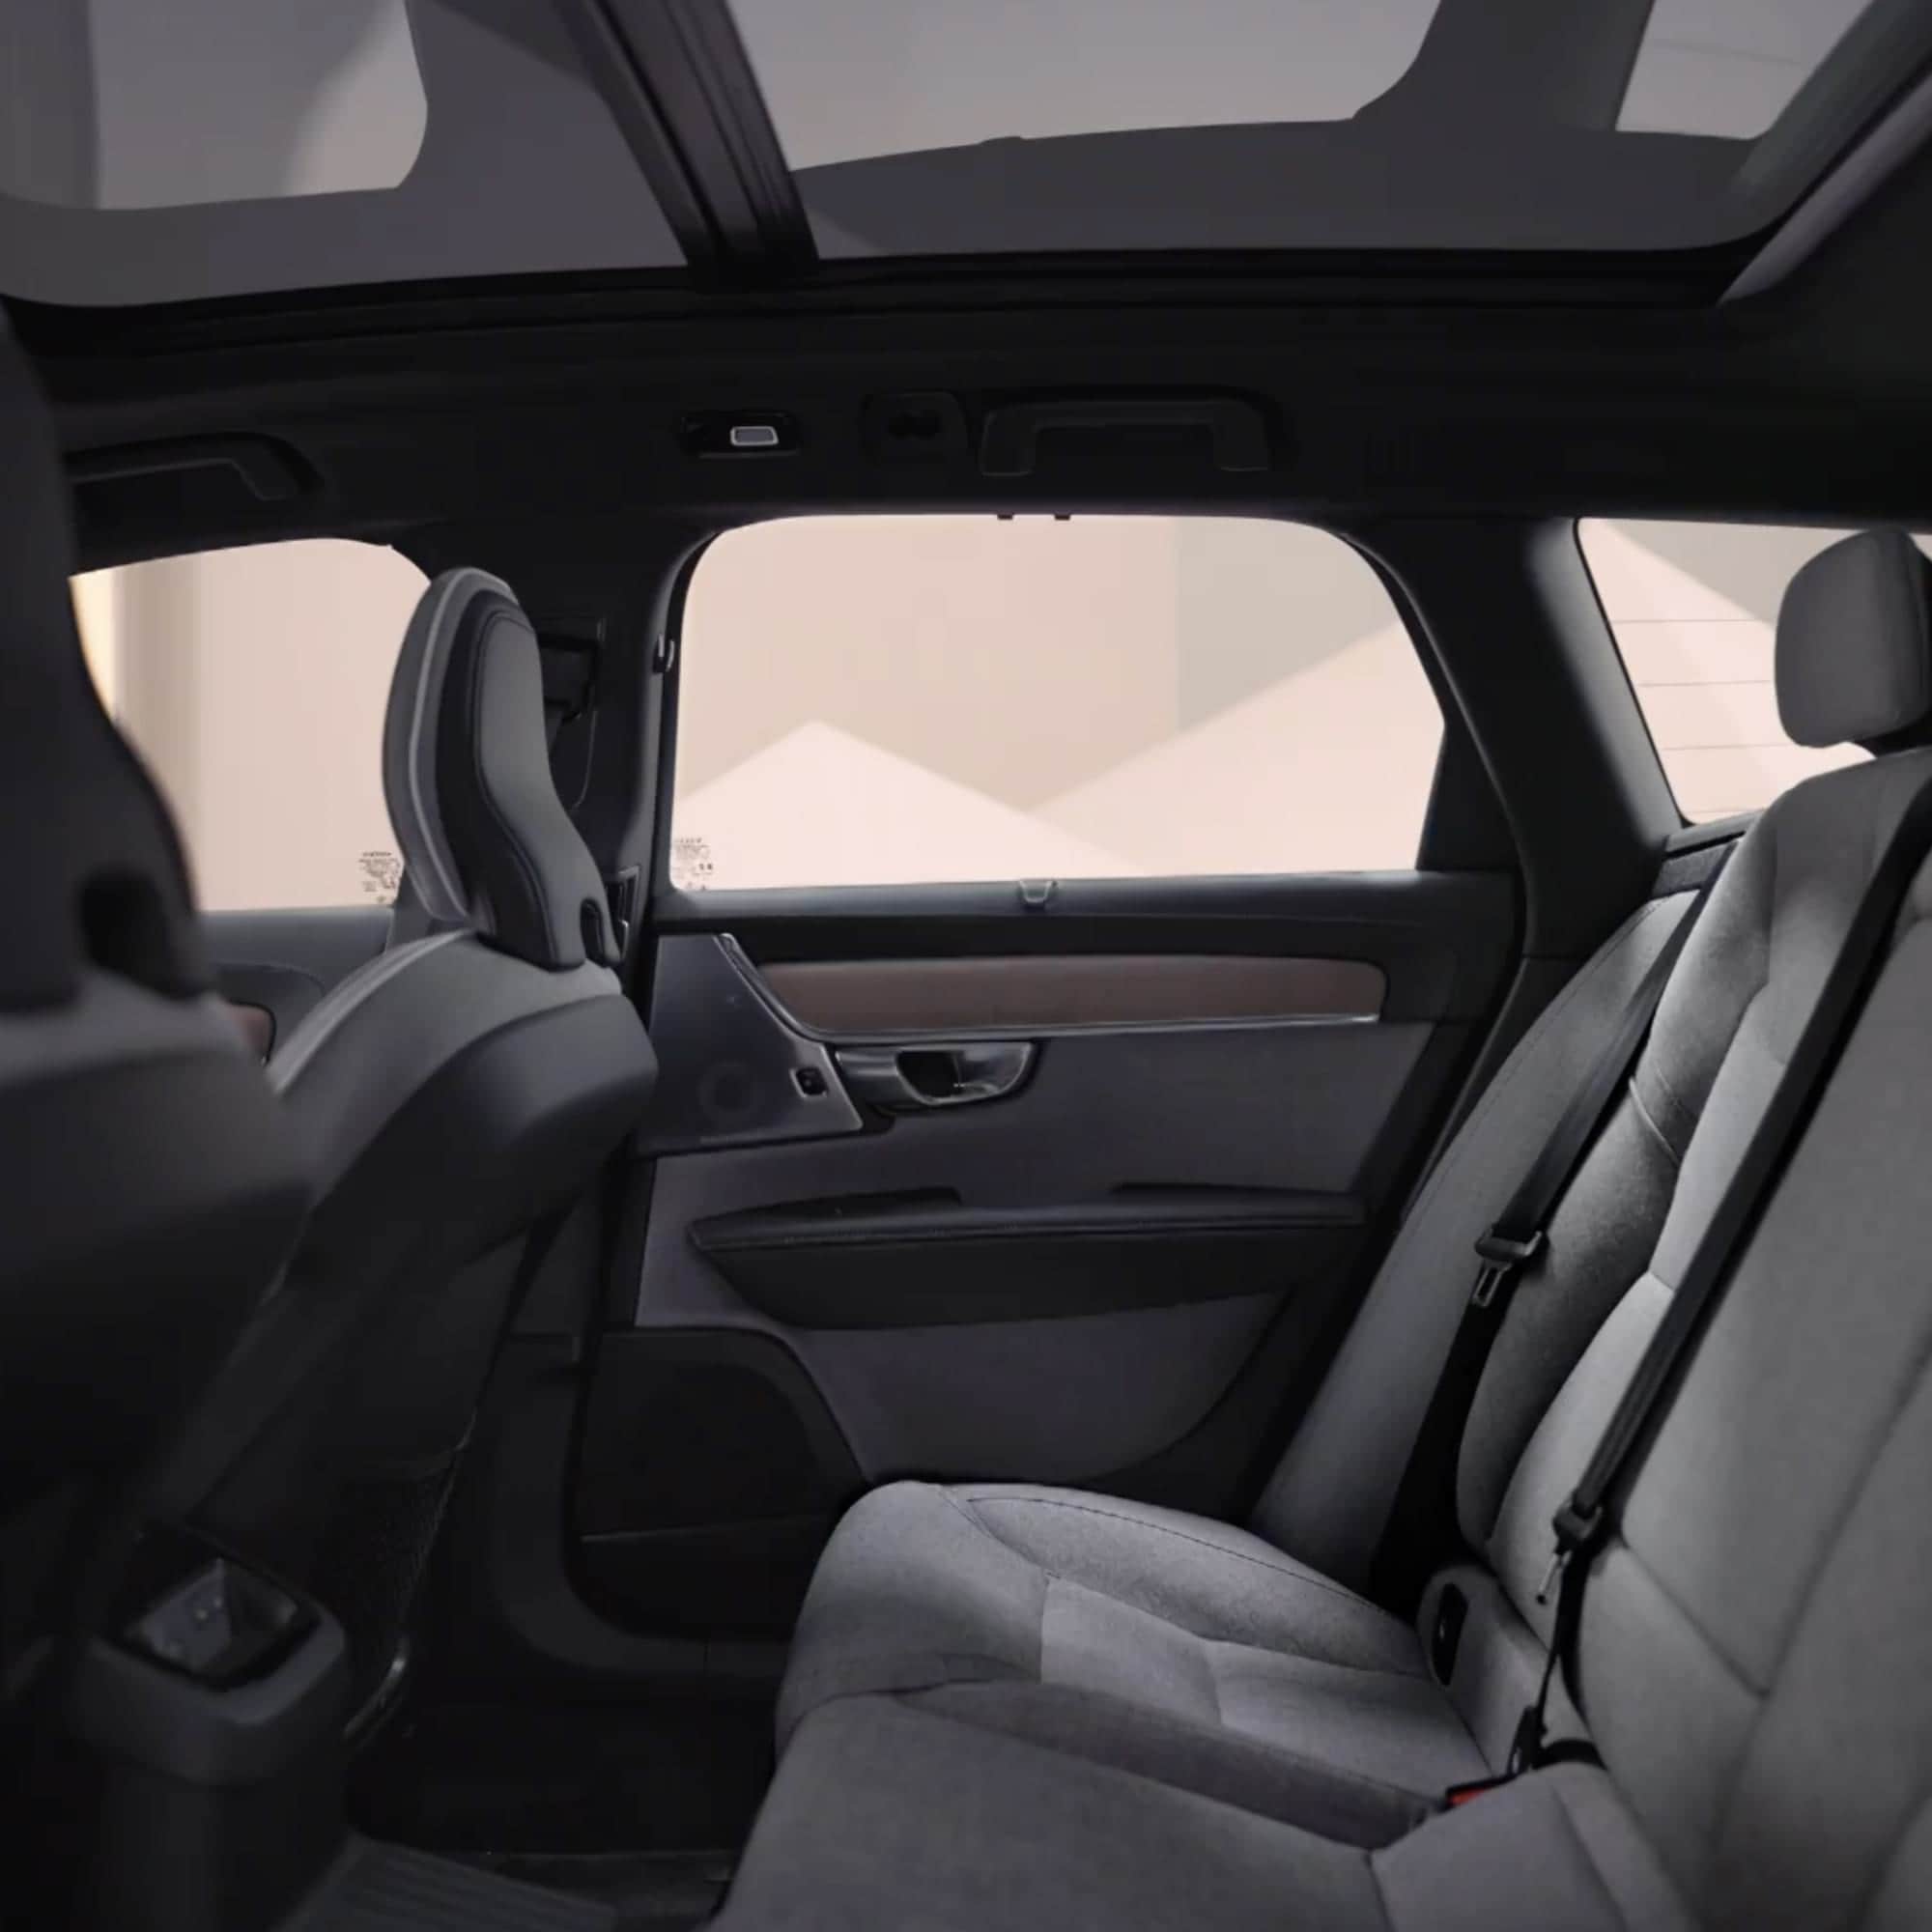 Présentation du design intérieur du break familial sportif Volvo V90 plug-in hybride.